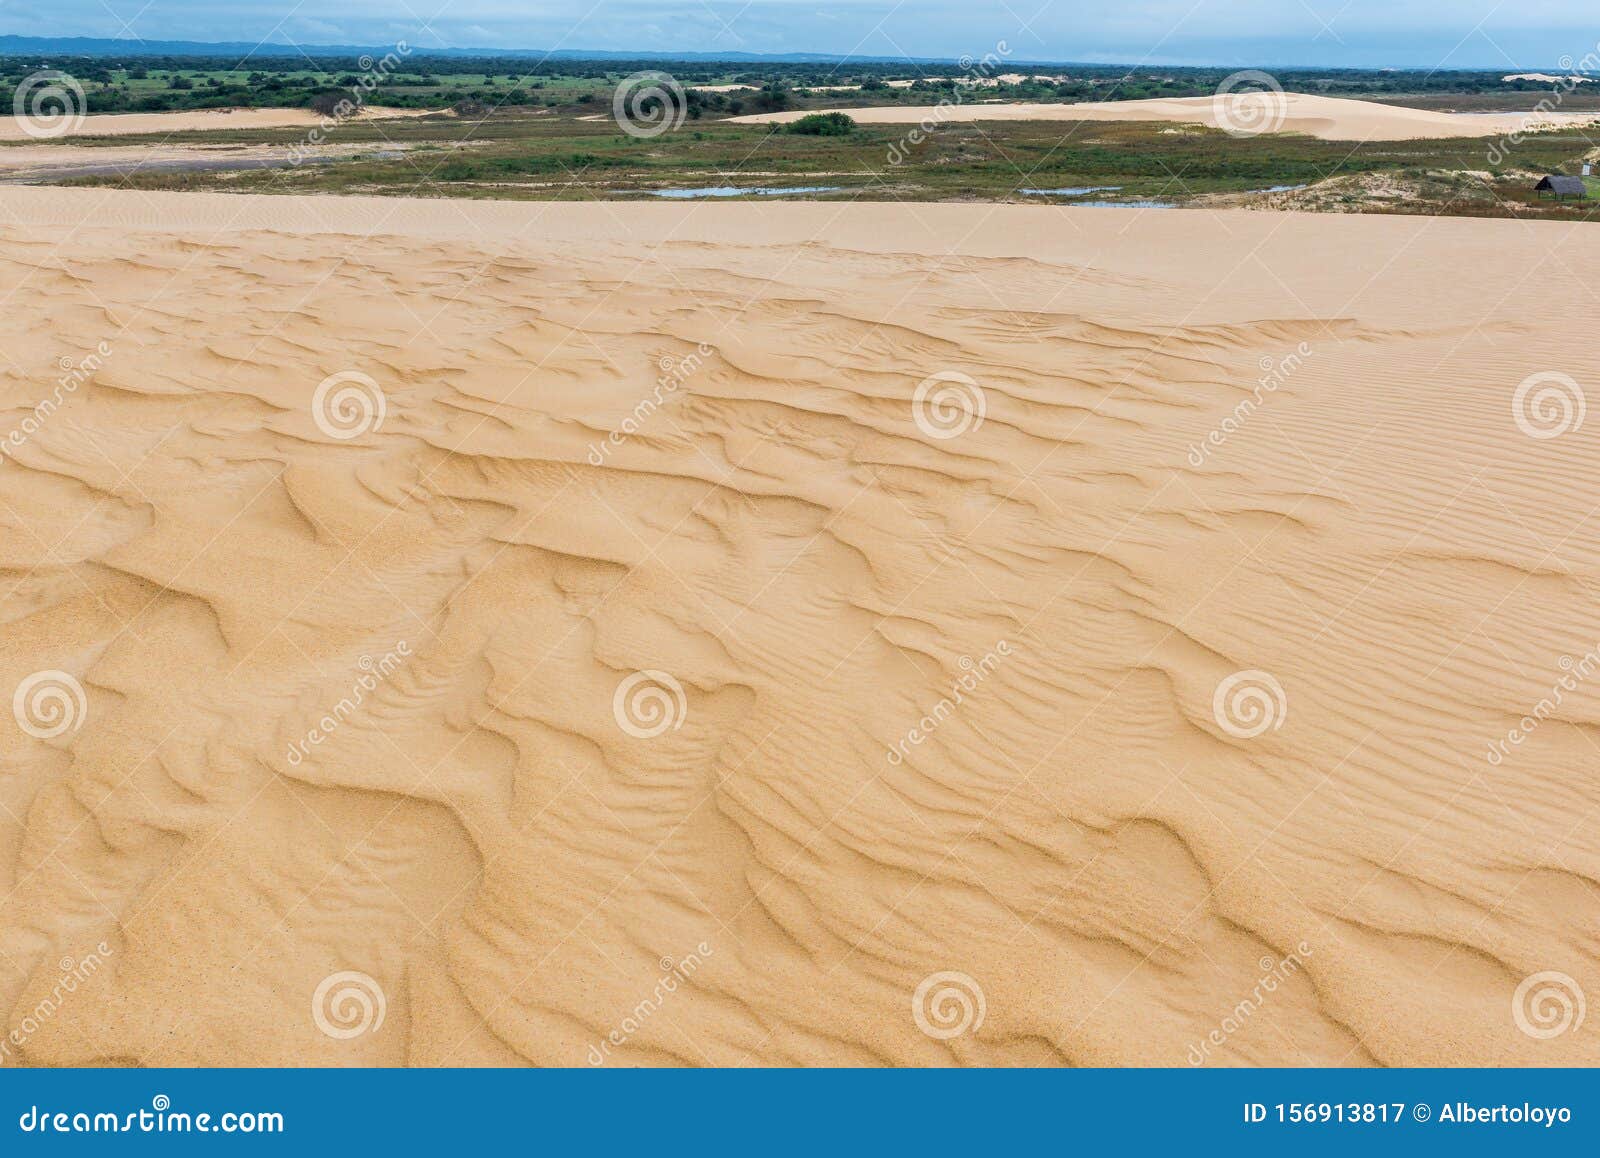 sand dunes of lomas de arena regional park, santa cruz, bolivia